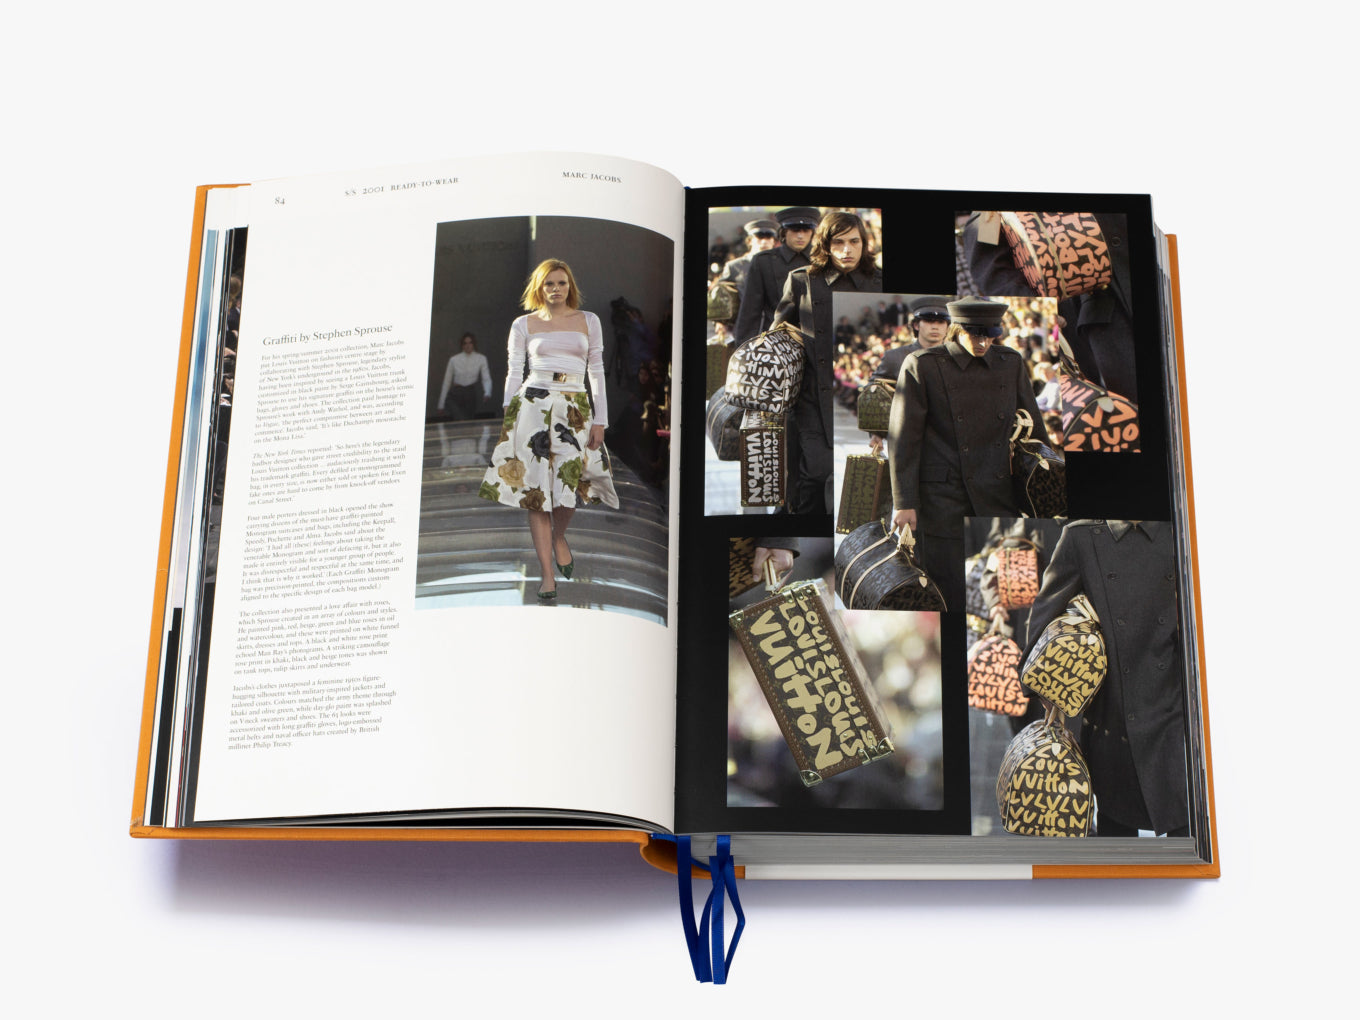 Louis Vuitton, Accents, Louis Vuitton Catwalk Book